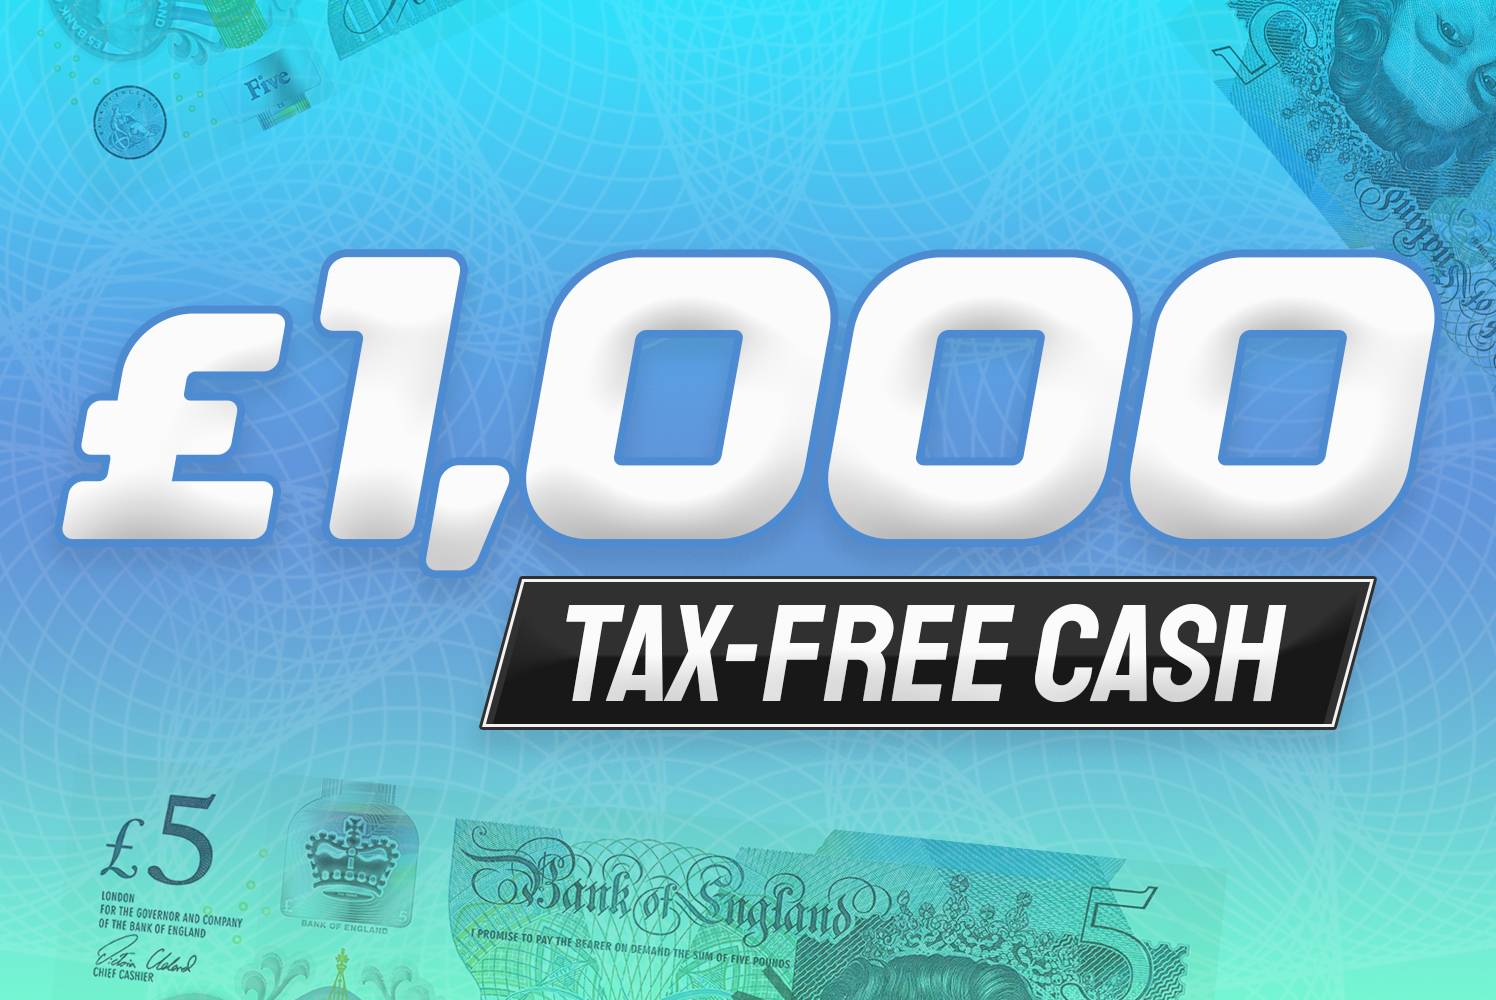 £1000 Tax Free Cash